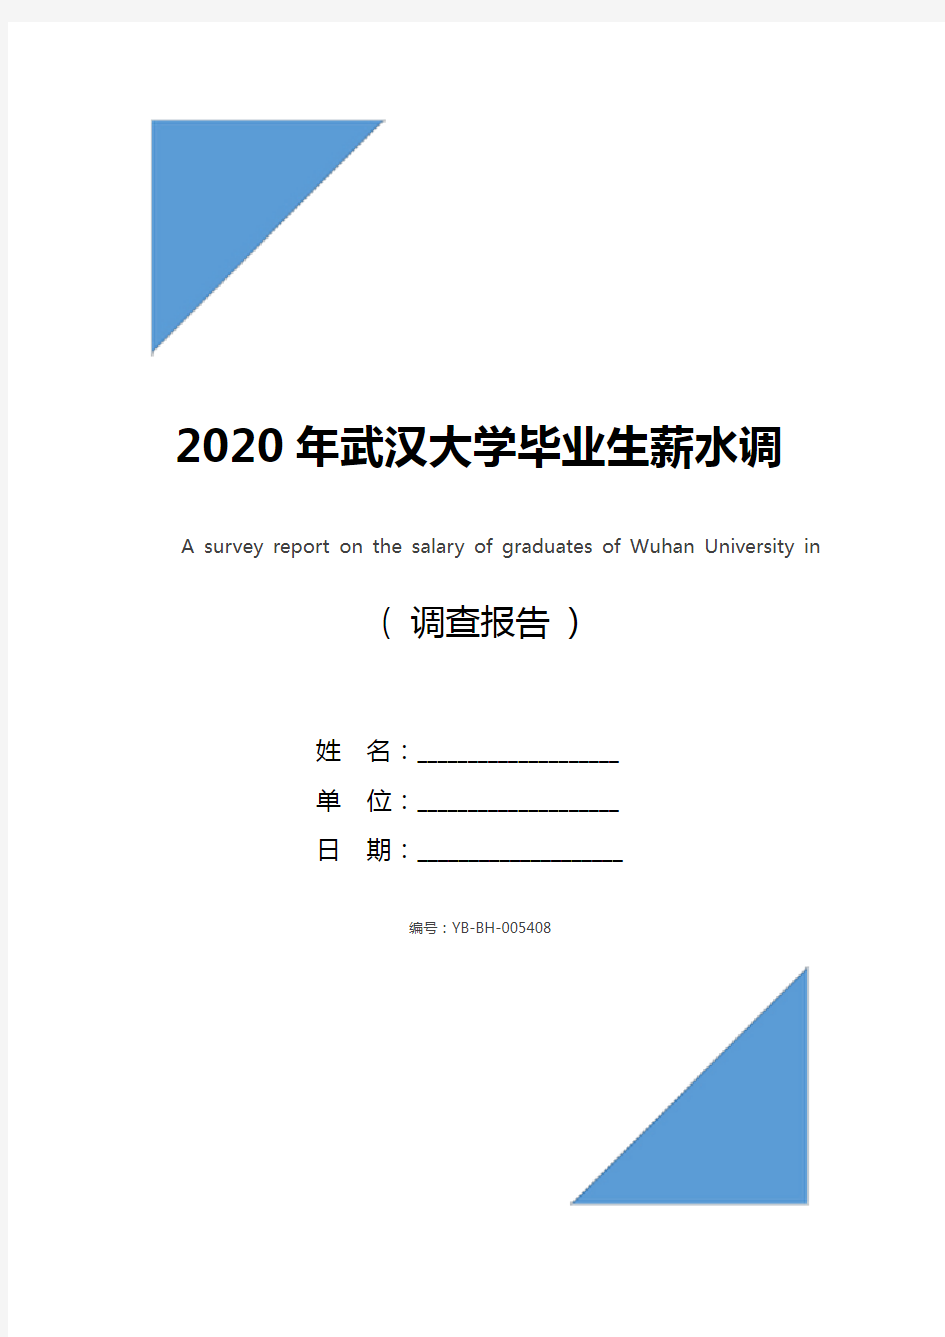 2020年武汉大学毕业生薪水调查报告_1